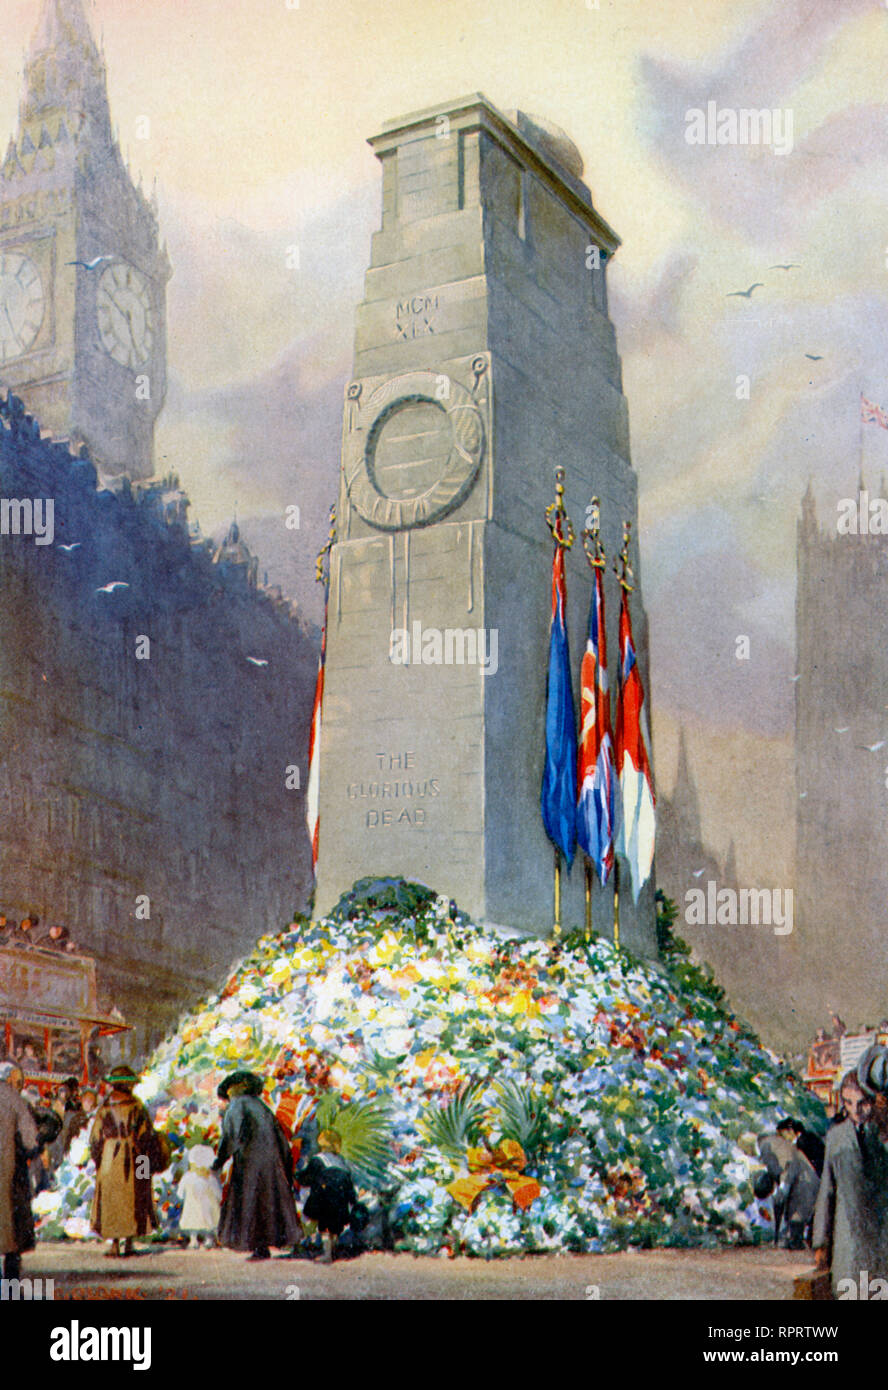 The Empire's Tribute to 'The Glorious Dead', c1925. Das Cenotaph ist ein Kriegsdenkmal auf Whitehall, London, England. Sein Ursprung liegt in einer temporären Struktur, die nach dem Ende des Ersten Weltkriegs für eine Friedensparade errichtet wurde. Sie wurde 1920 durch eine permanente Struktur ersetzt und zum offiziellen nationalen Kriegsdenkmal des Vereinigten Königreichs ernannt. Stockfoto